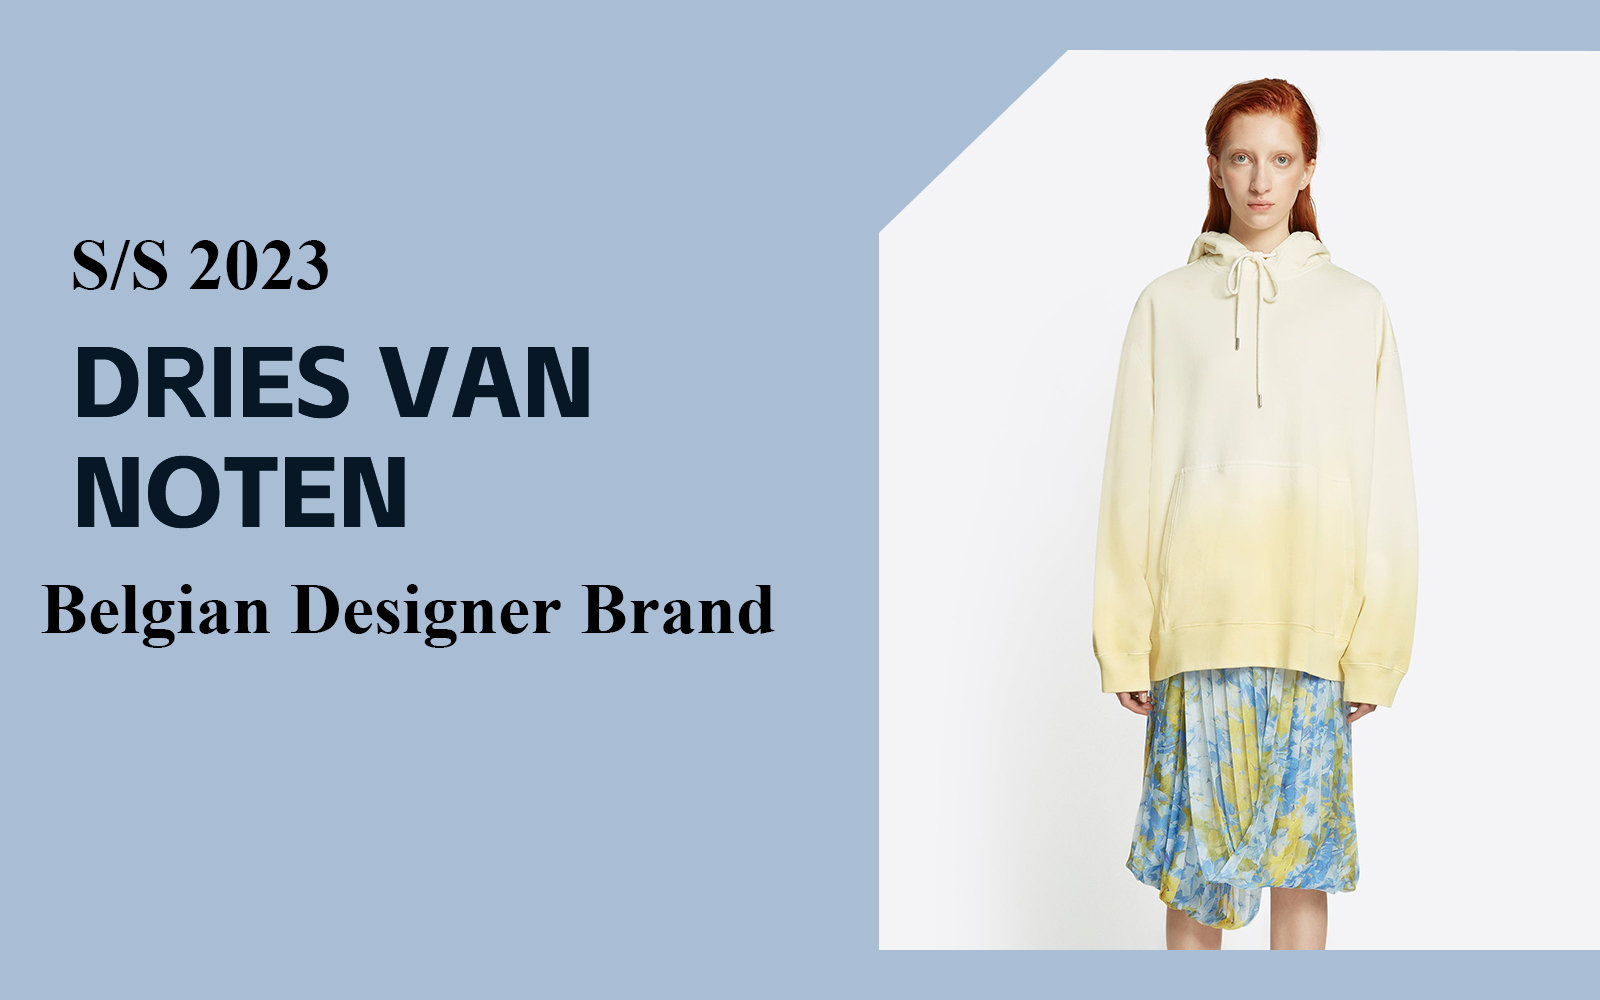 The Analysis of Dries Van Noten The Womenswear Designer Brand